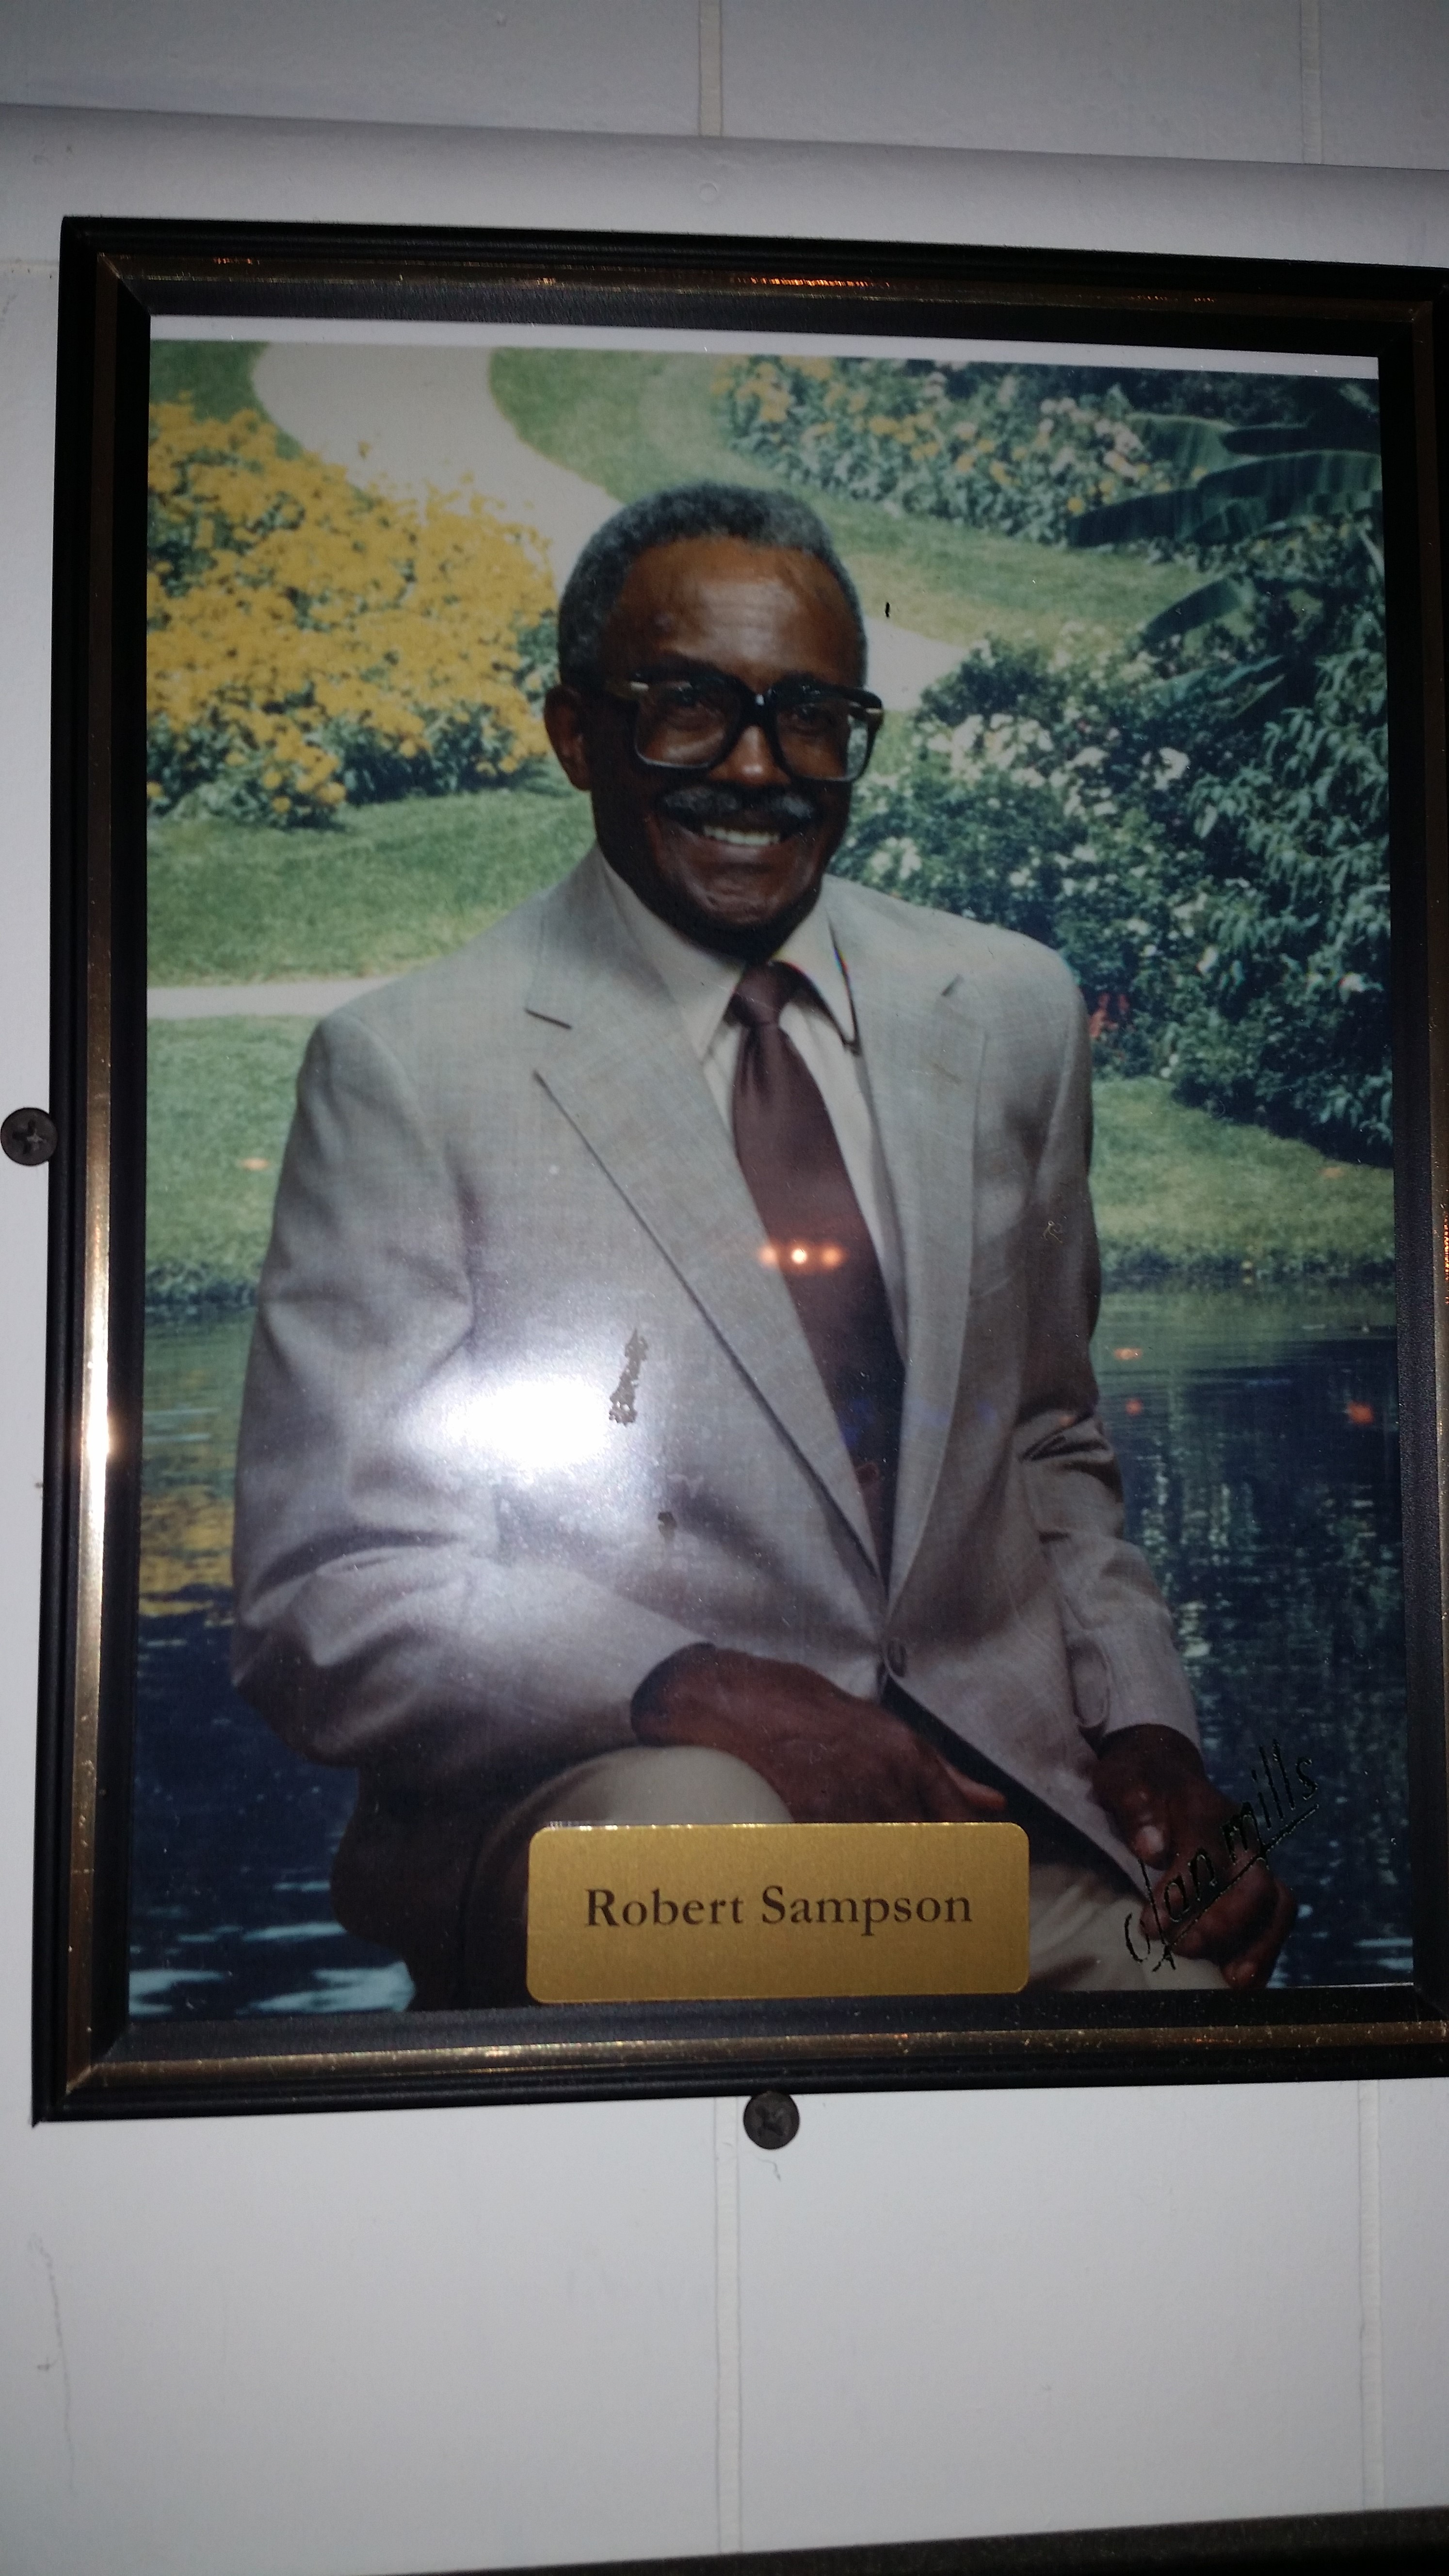 Mr. Robert Sampson